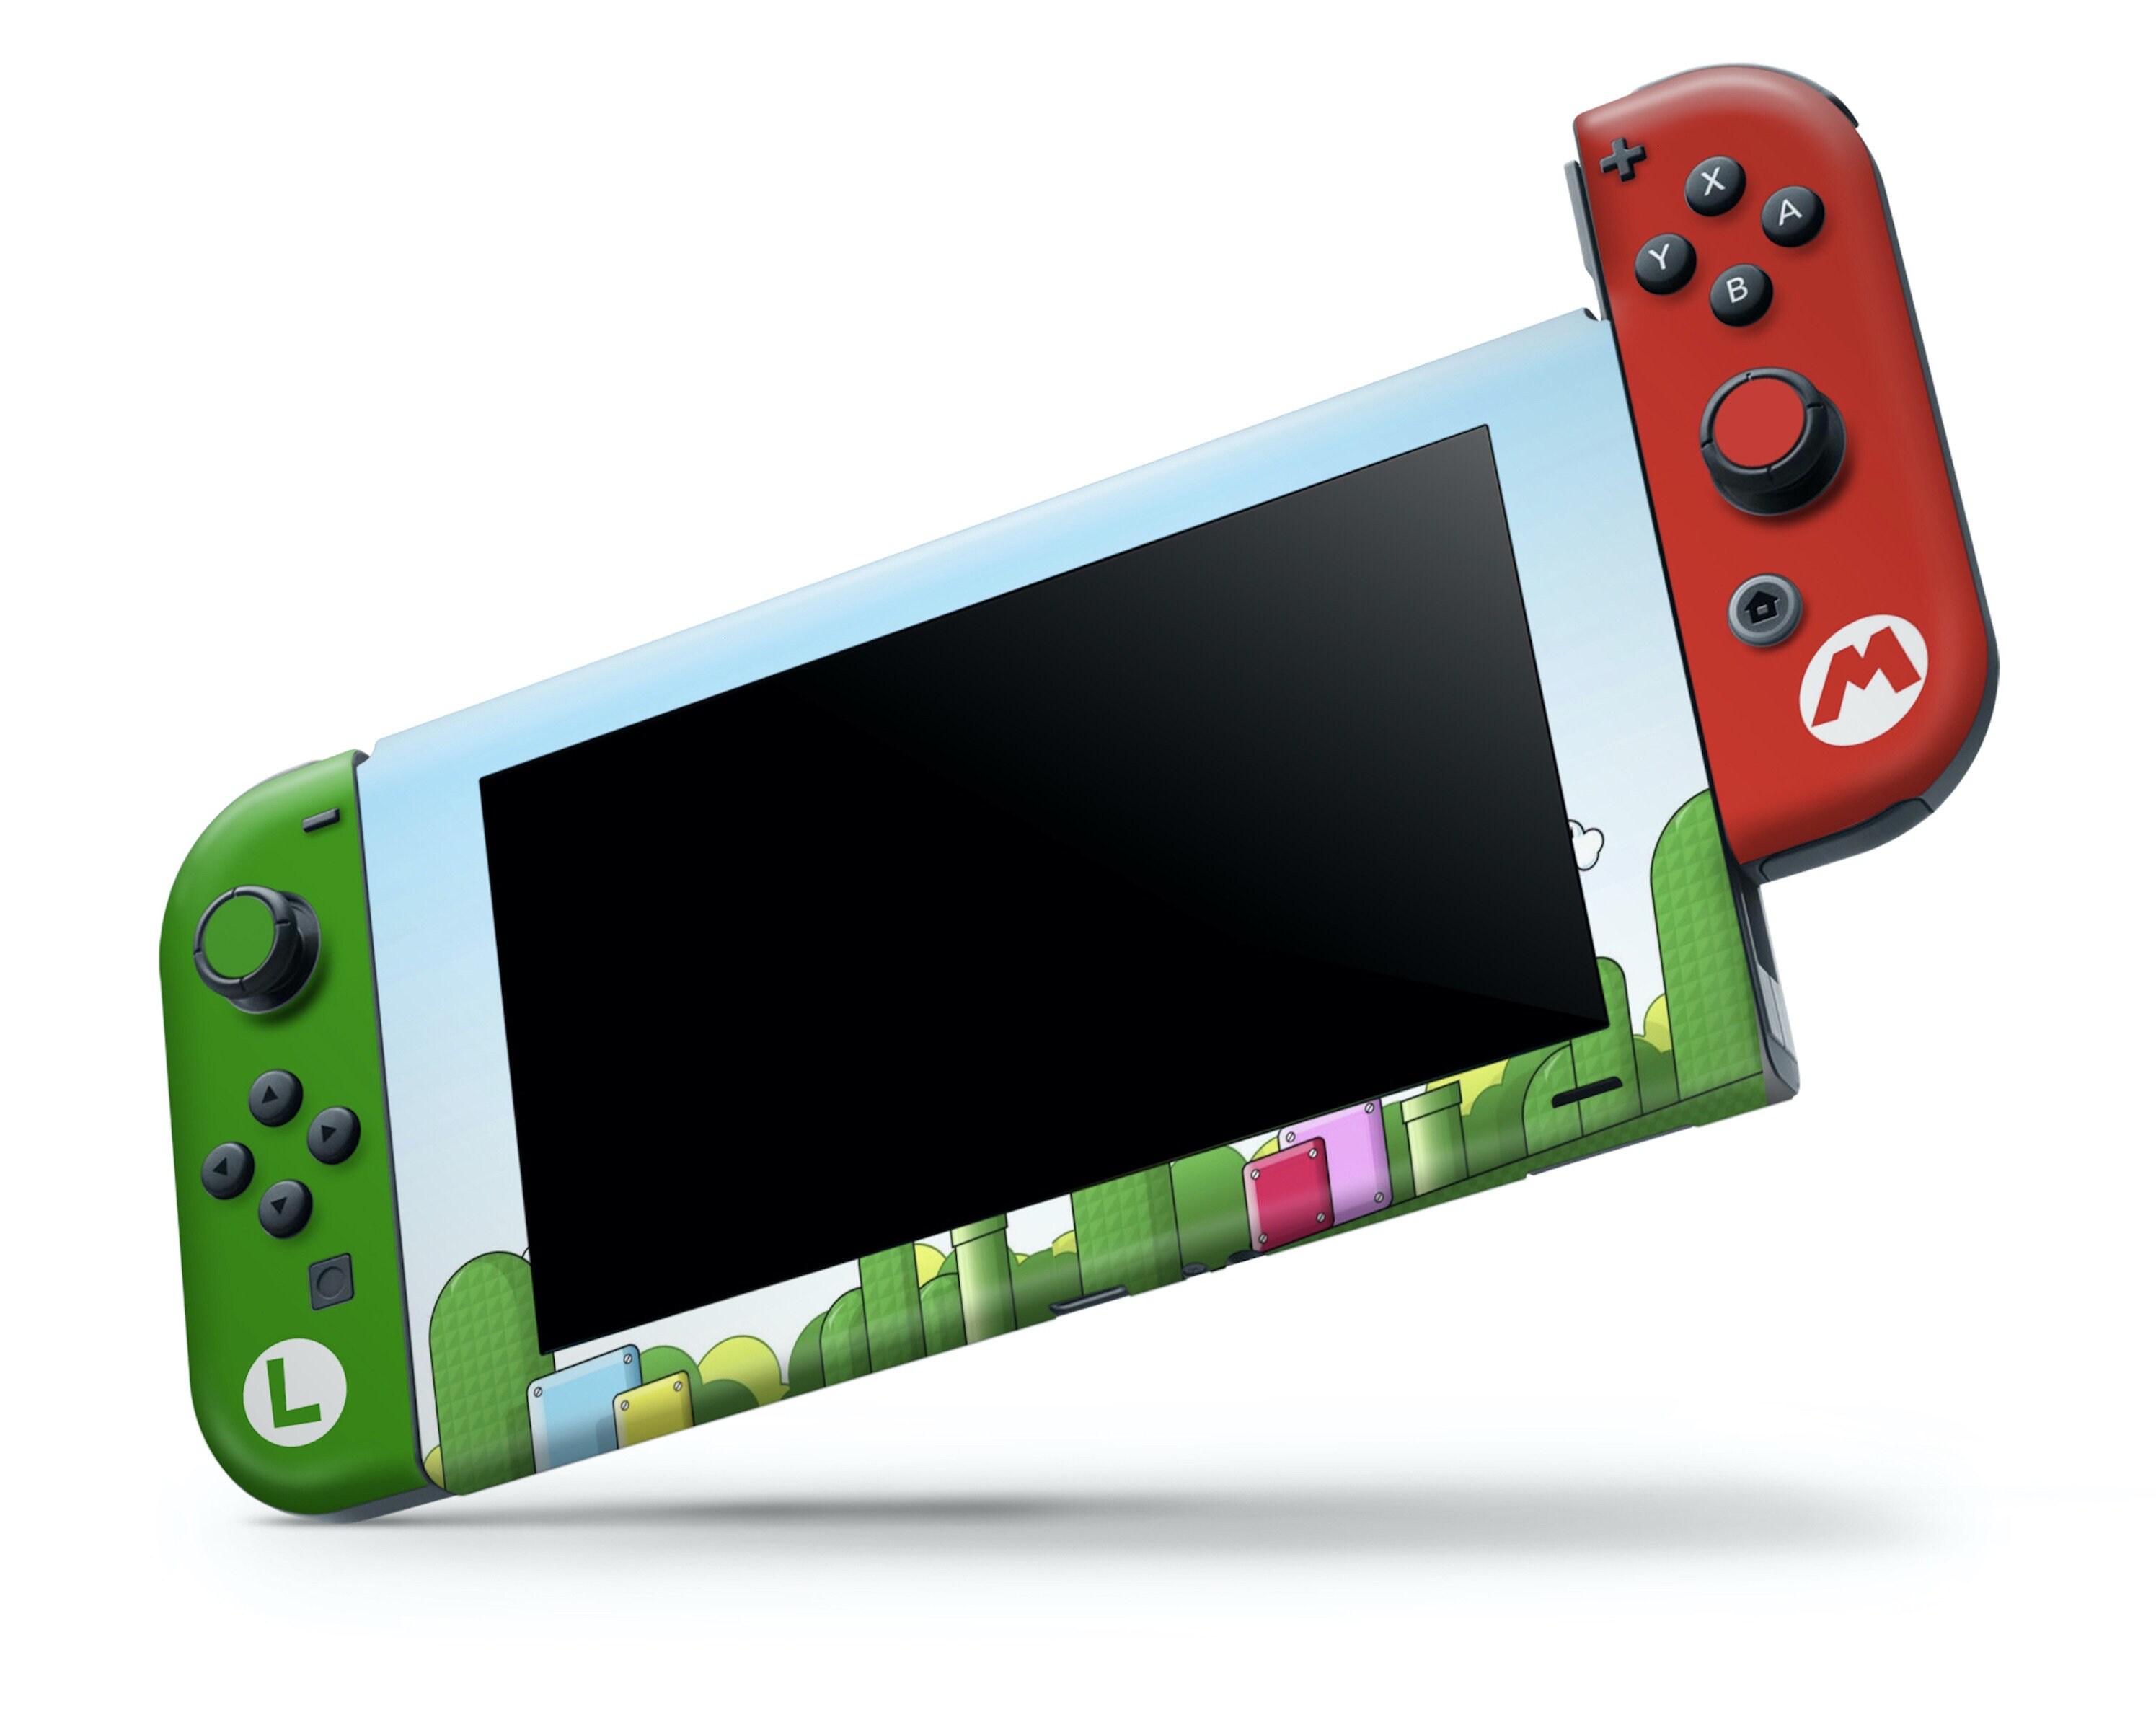 Jogo Game Infantil Super Mario Bros Delux - Nintendo Switch em Promoção na  Americanas